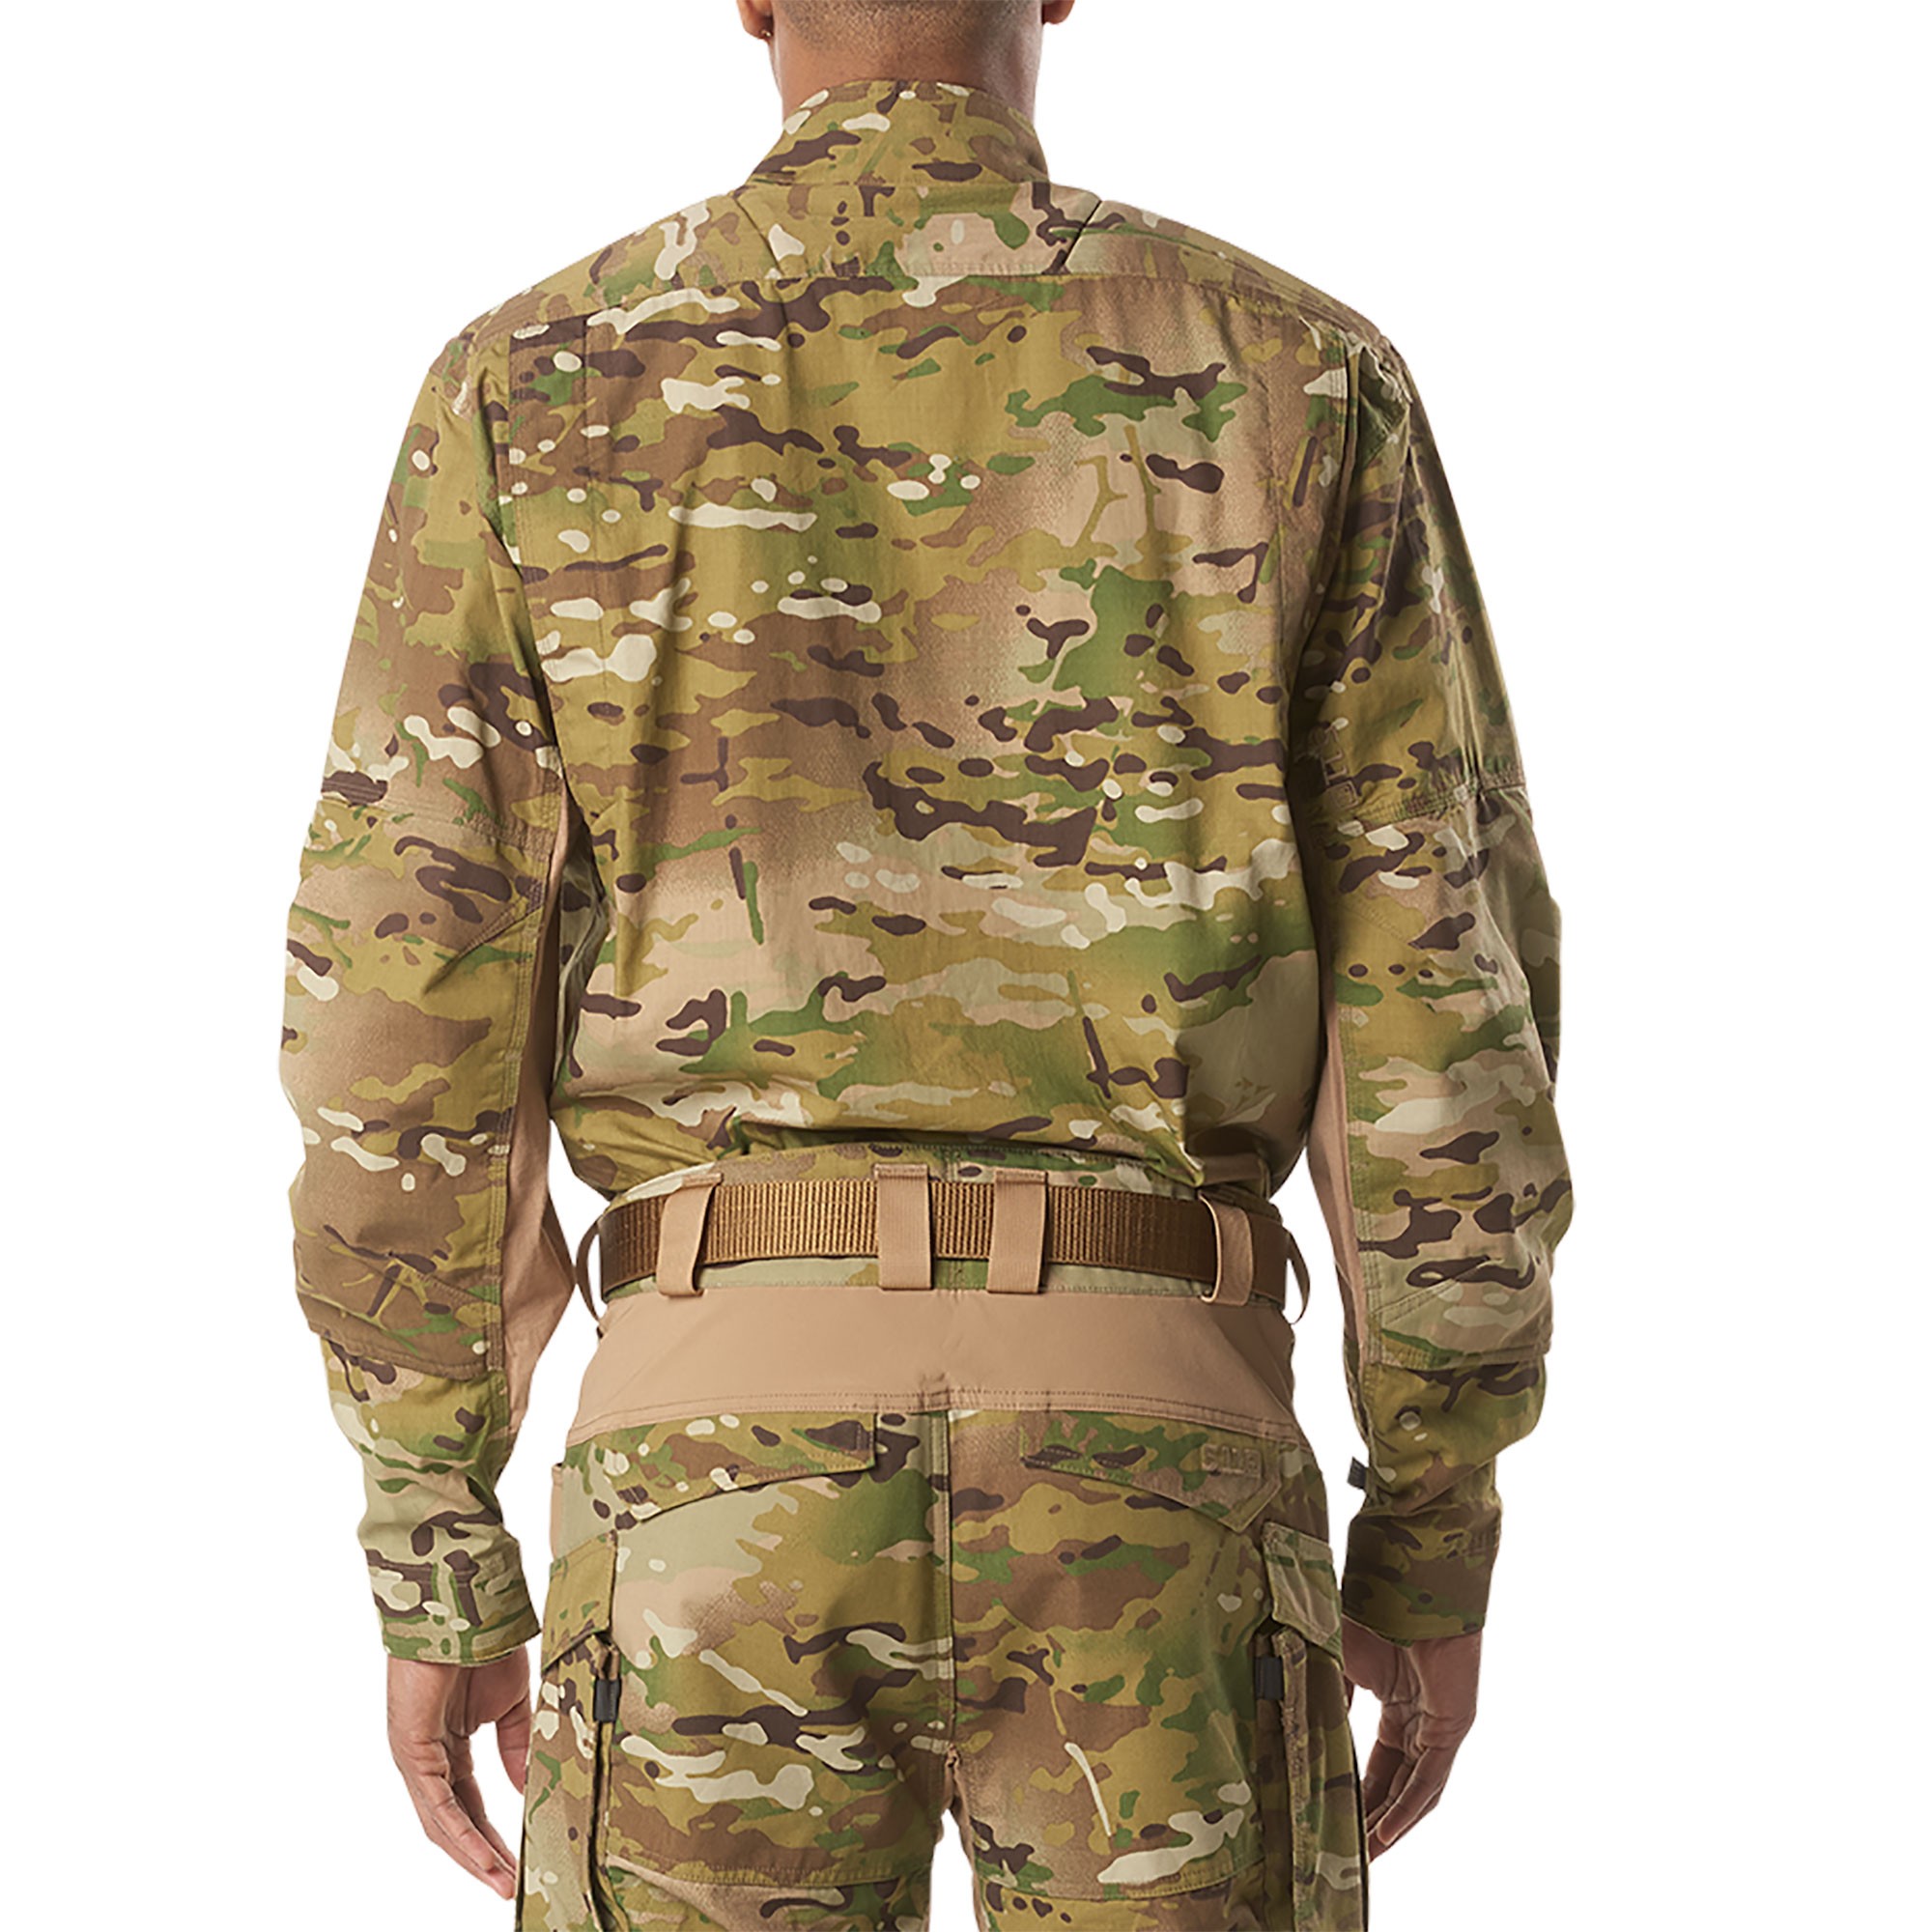 Форма 11 военному. Рубашка 5.11 Tactical Multicam. Рубашка XPRT Tactical l/s. Тактическая форма 5.11. 5.11 Tactical форма.